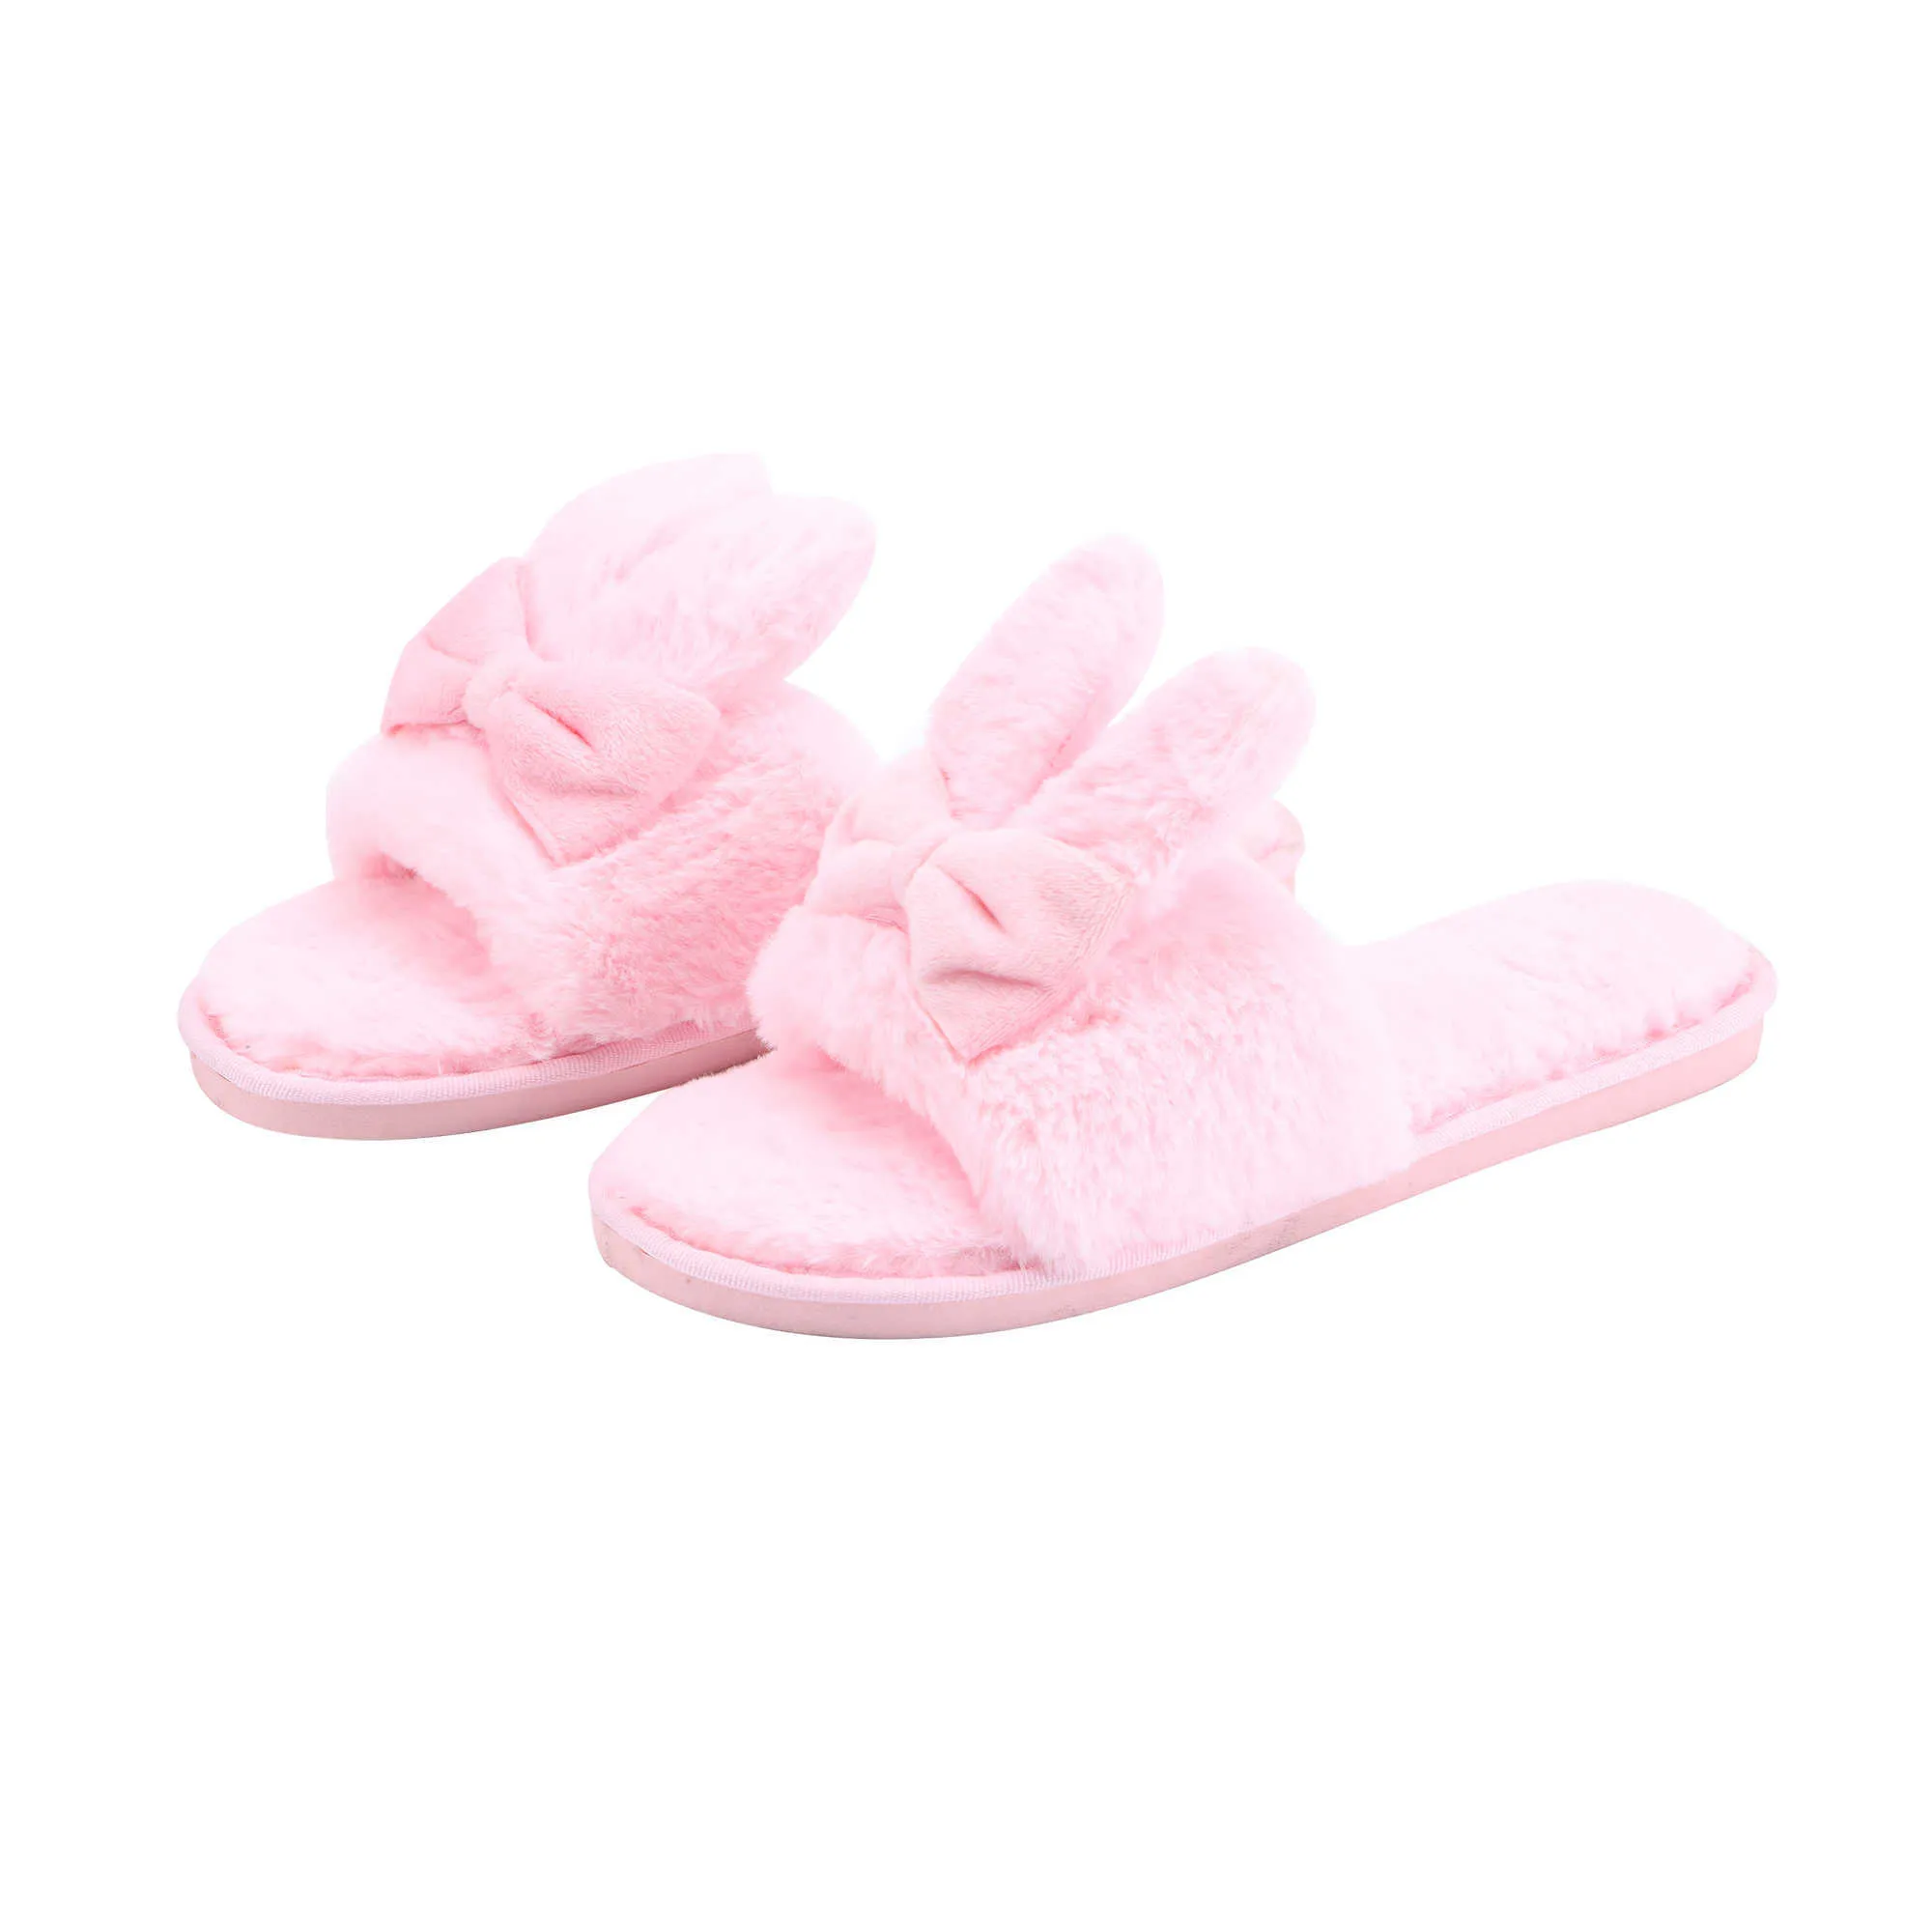 HBP Non-Brand HBP Non-Brand pantoufles confortables et douillettes en peluche de lapin de dessin animé rose doux pour femmes